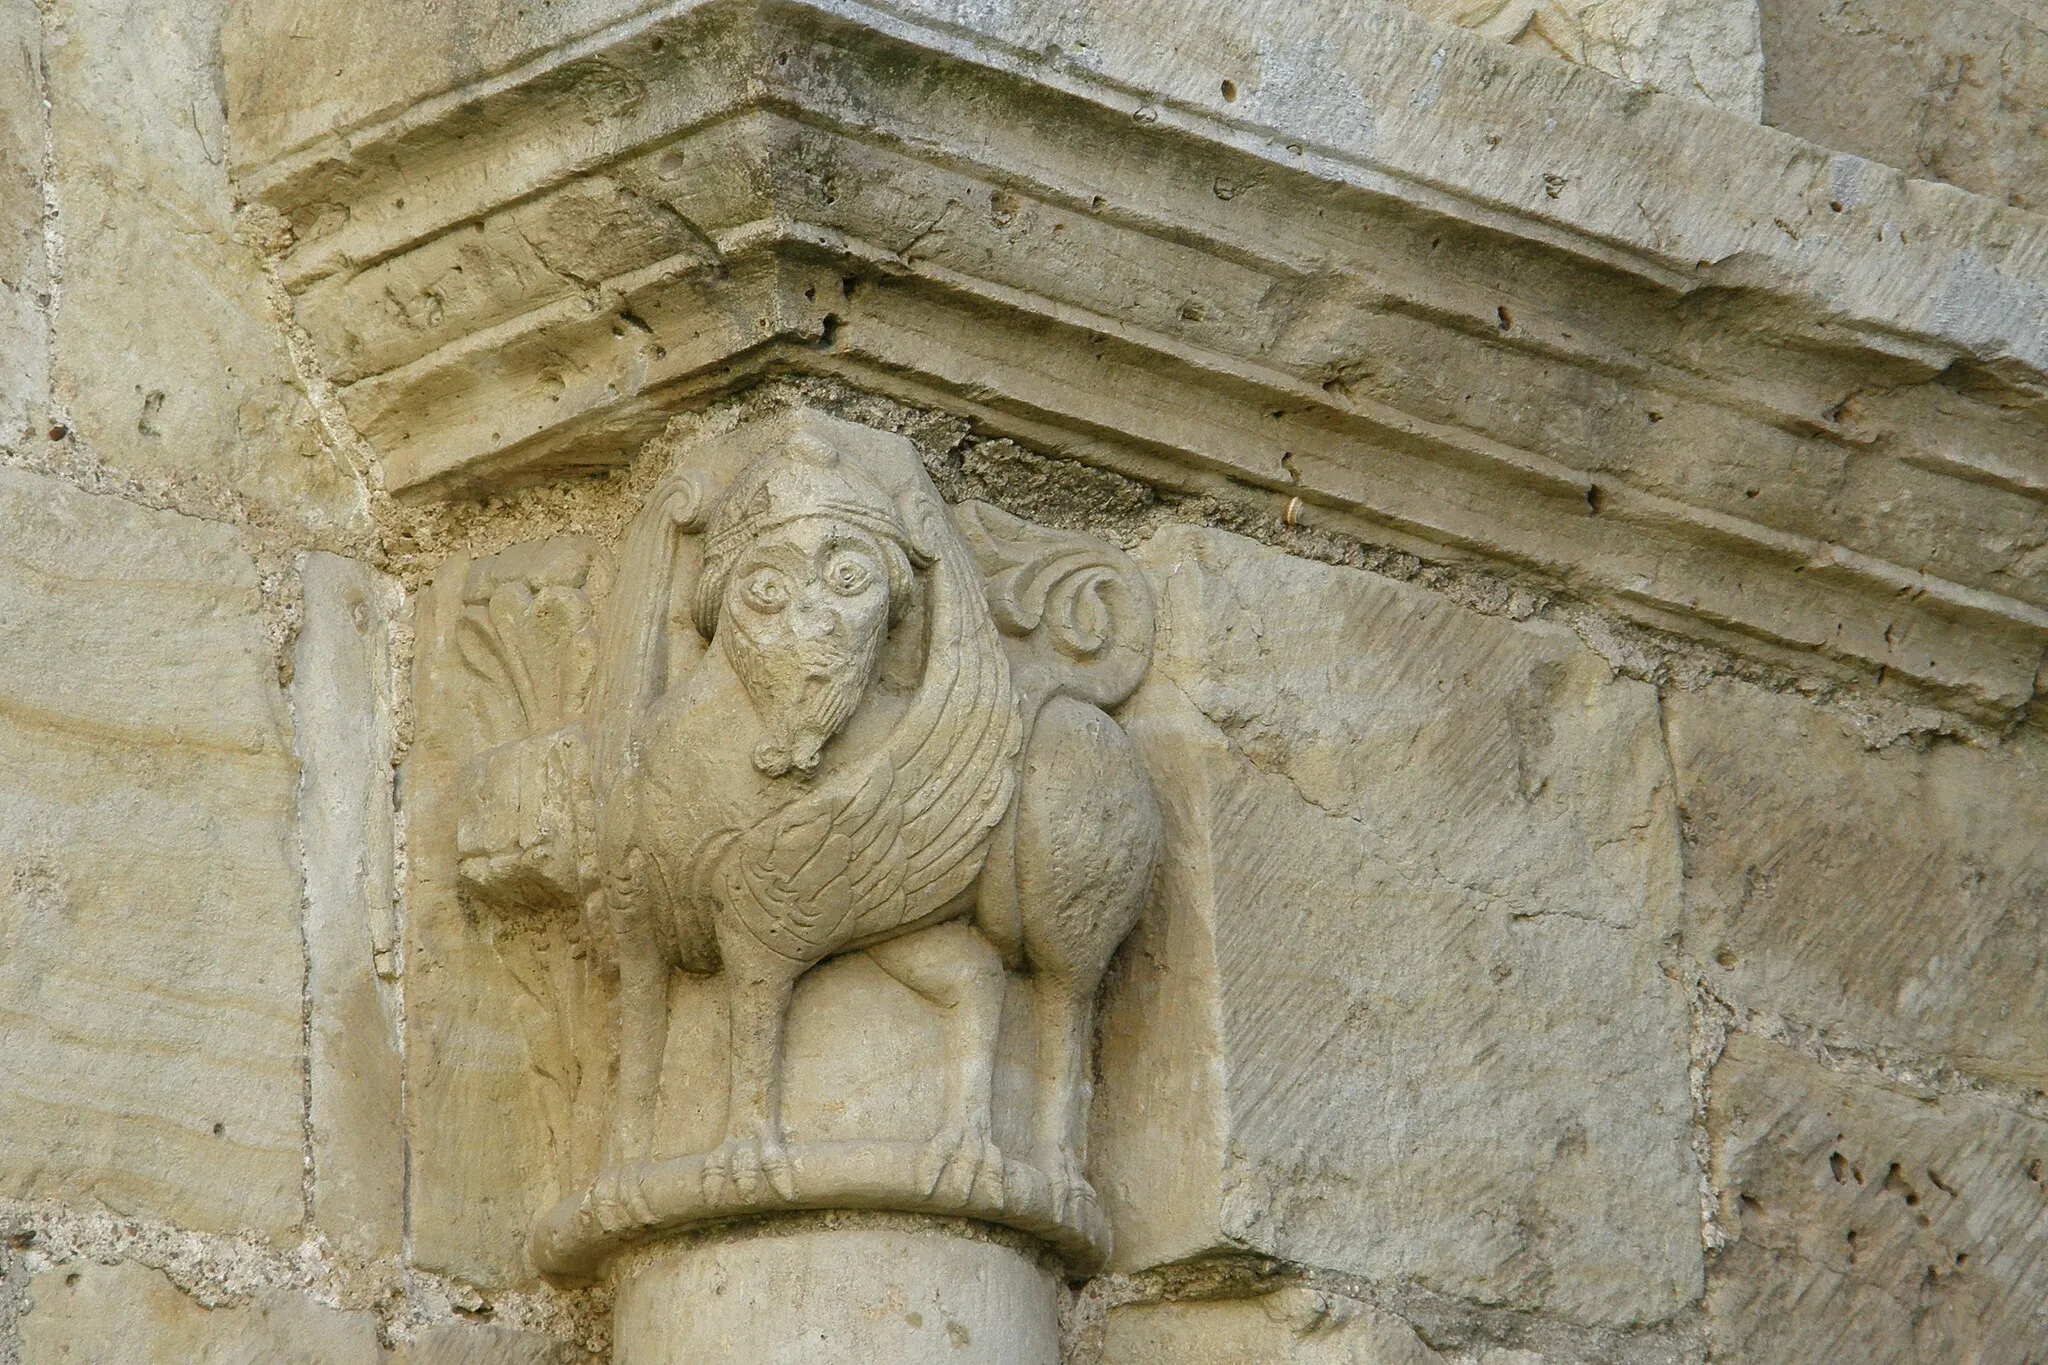 Photo showing: Un chapiteau de l'église romane Saint Maixent de Verrines sous Celles, département des Deux-Sèvres, France.